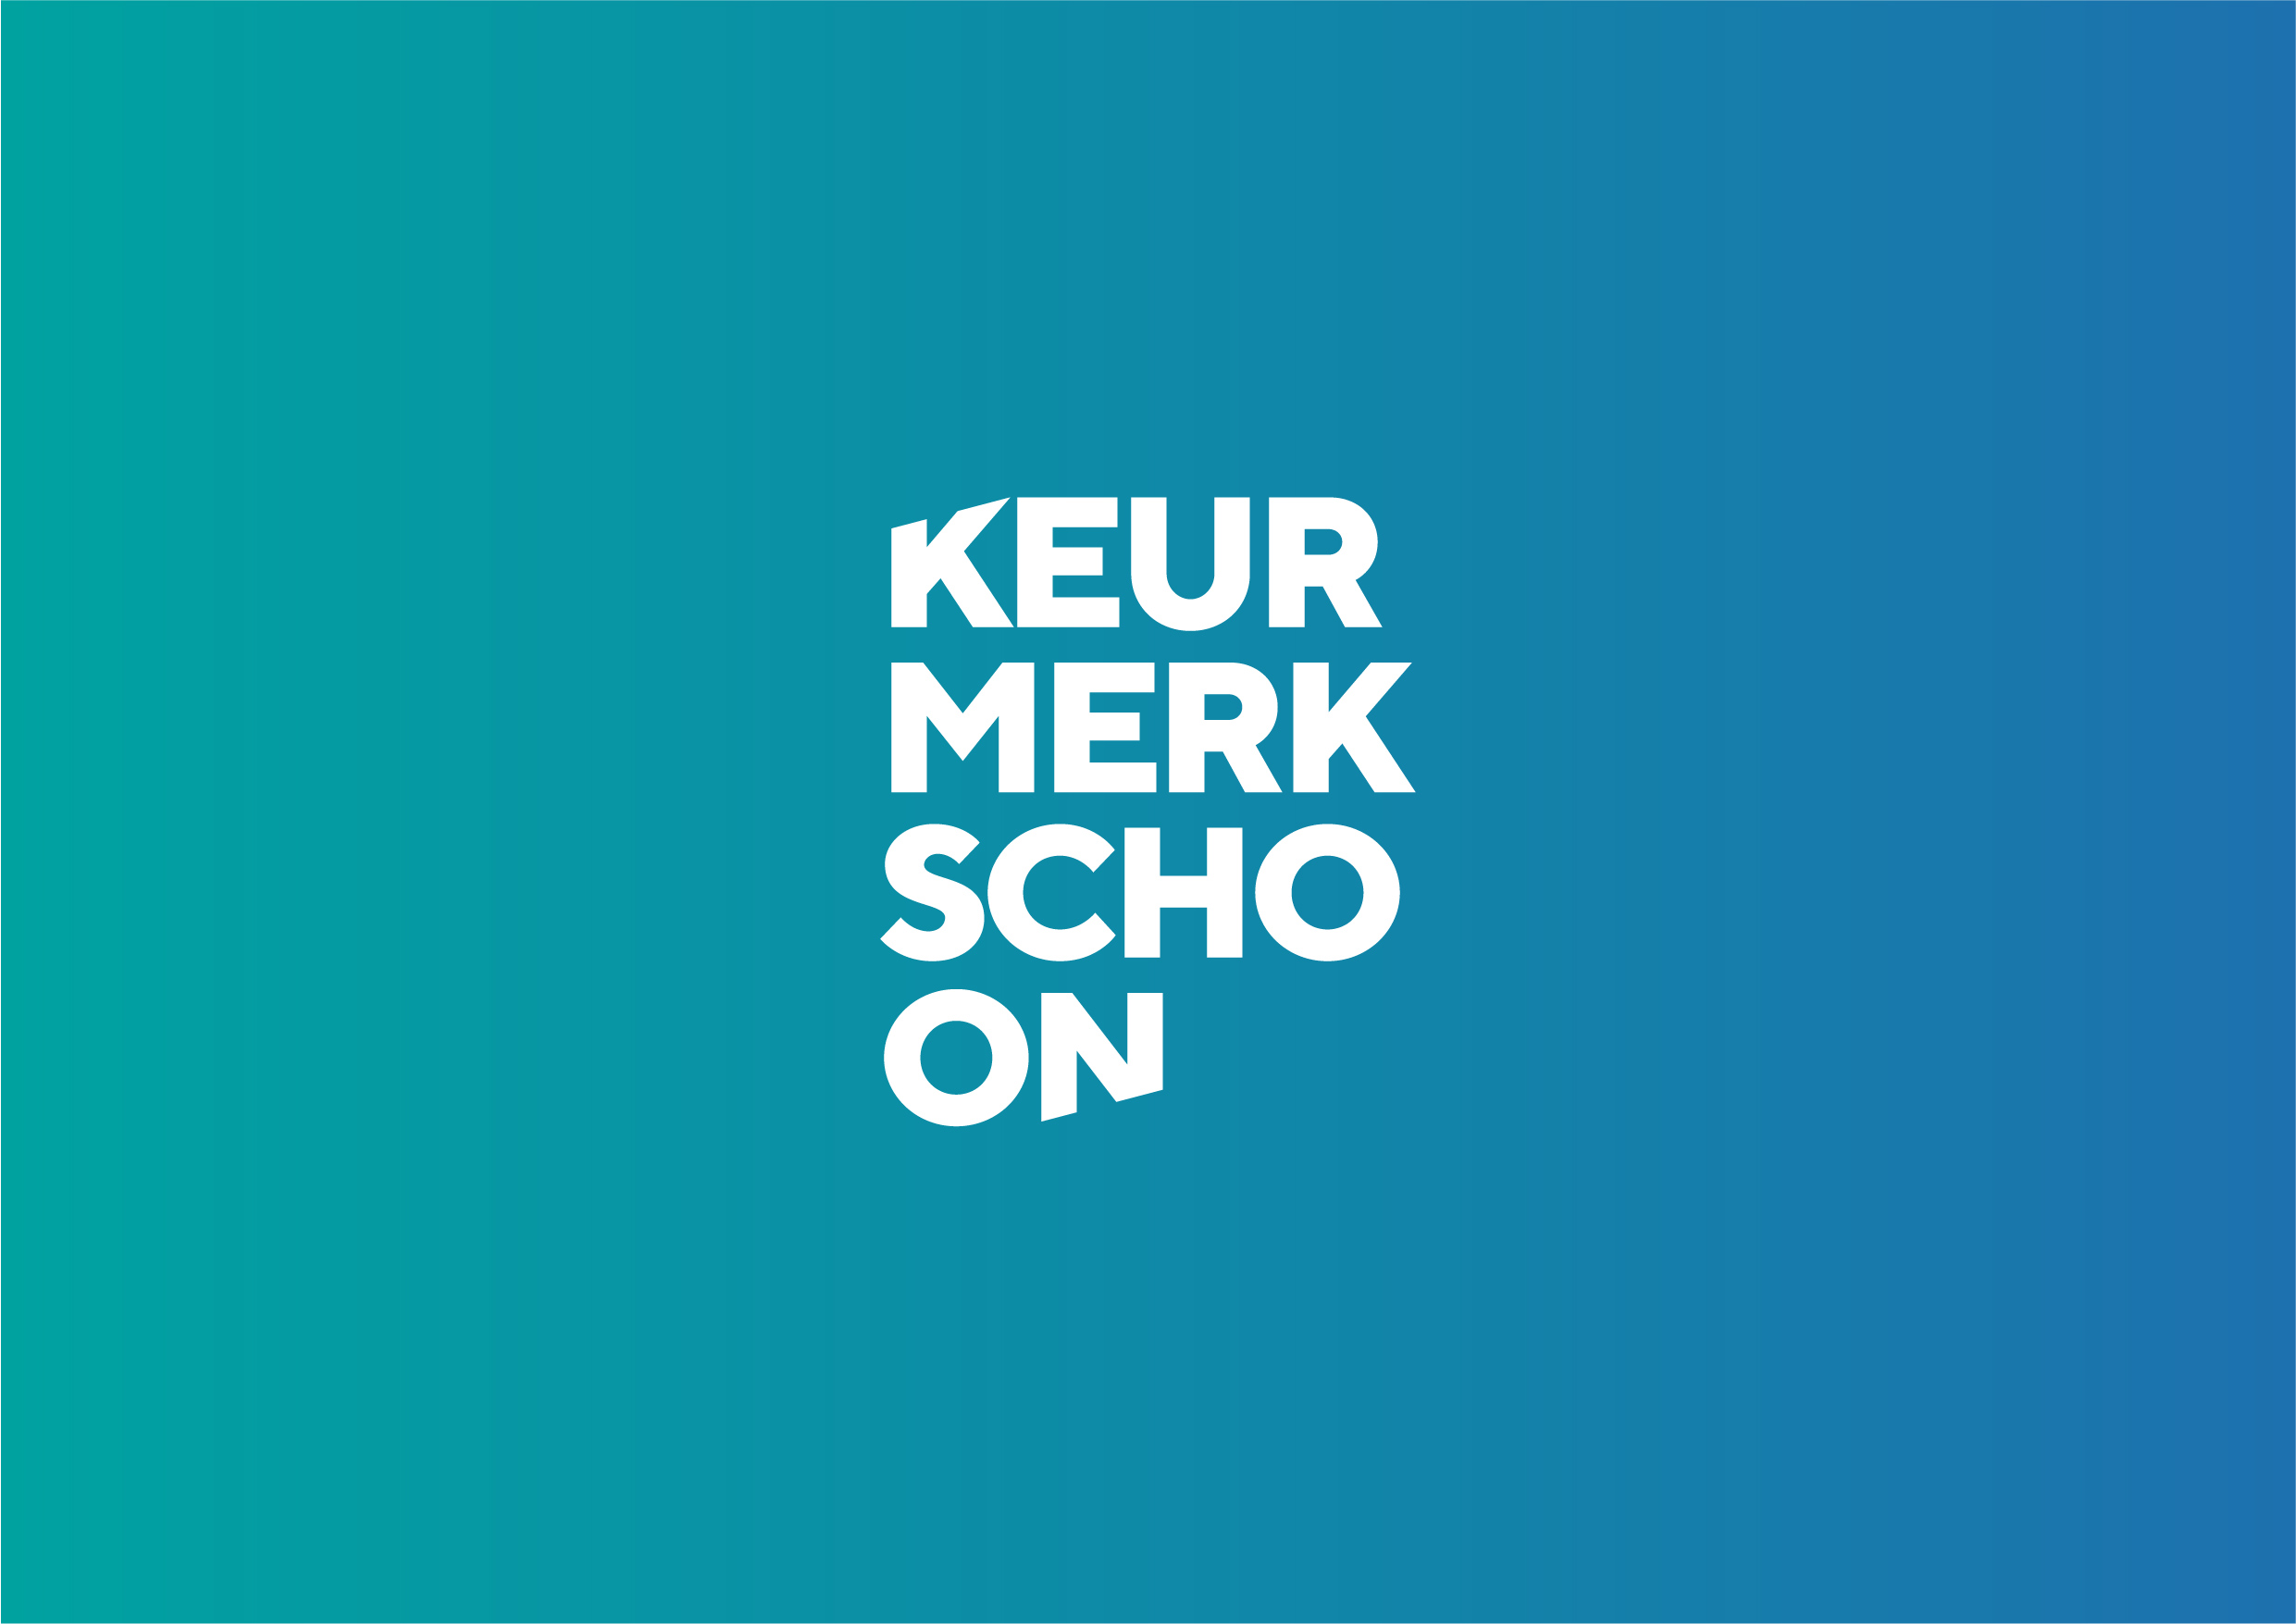 Keurmerk schoon many more logo huisstijl